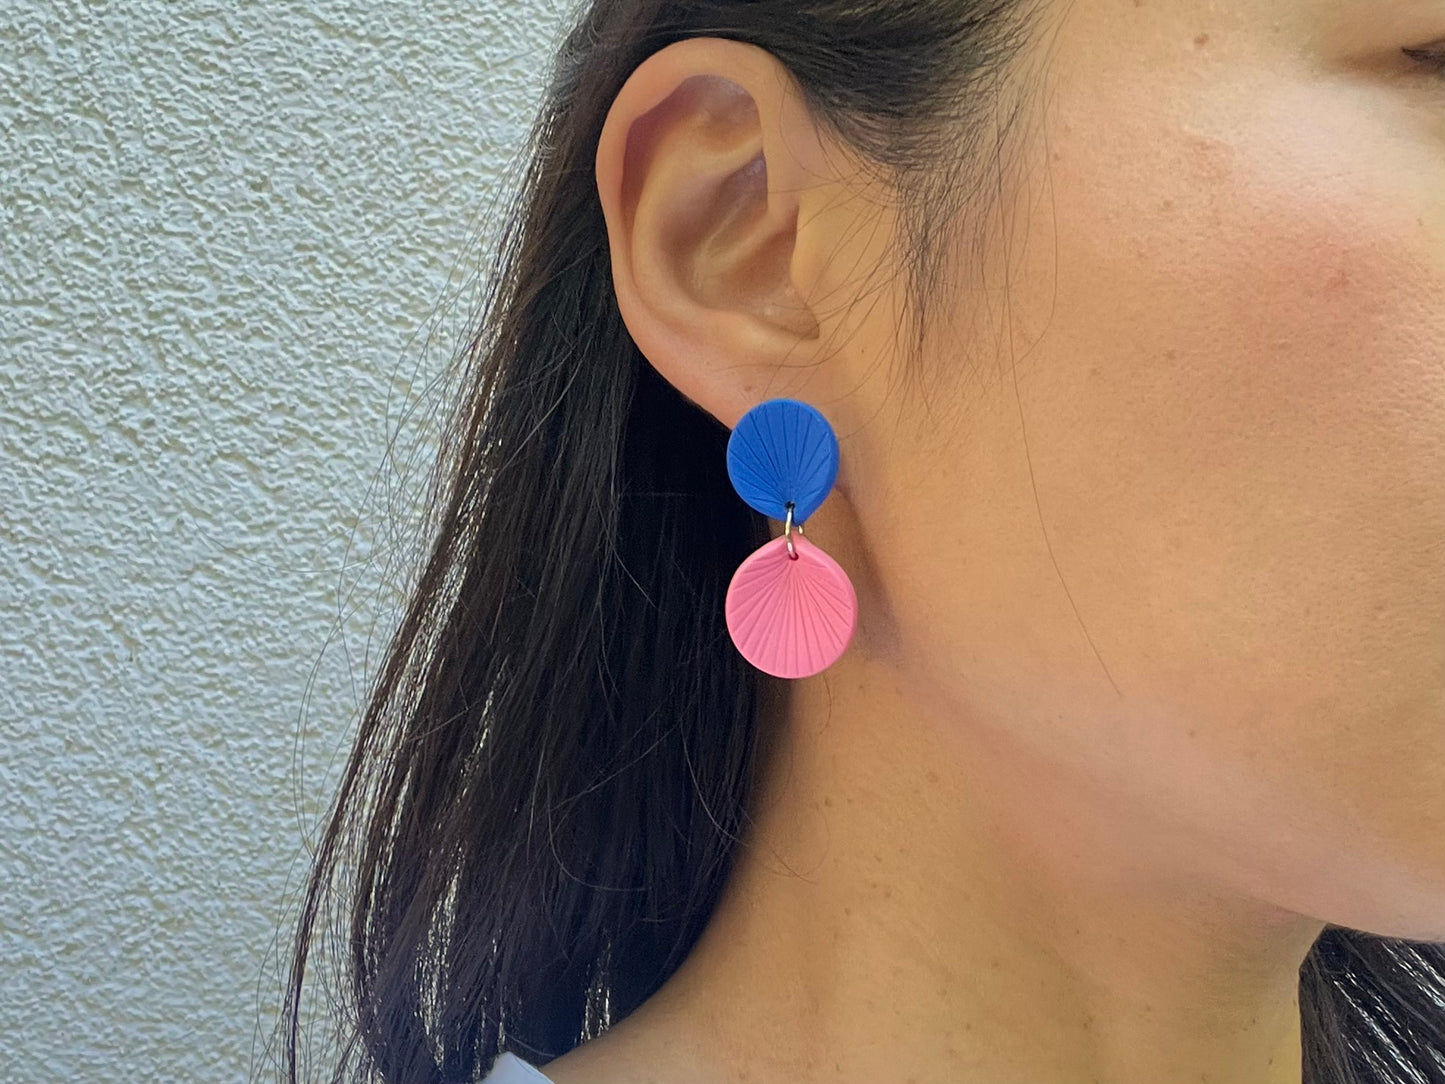 Colour-blocked earrings REI